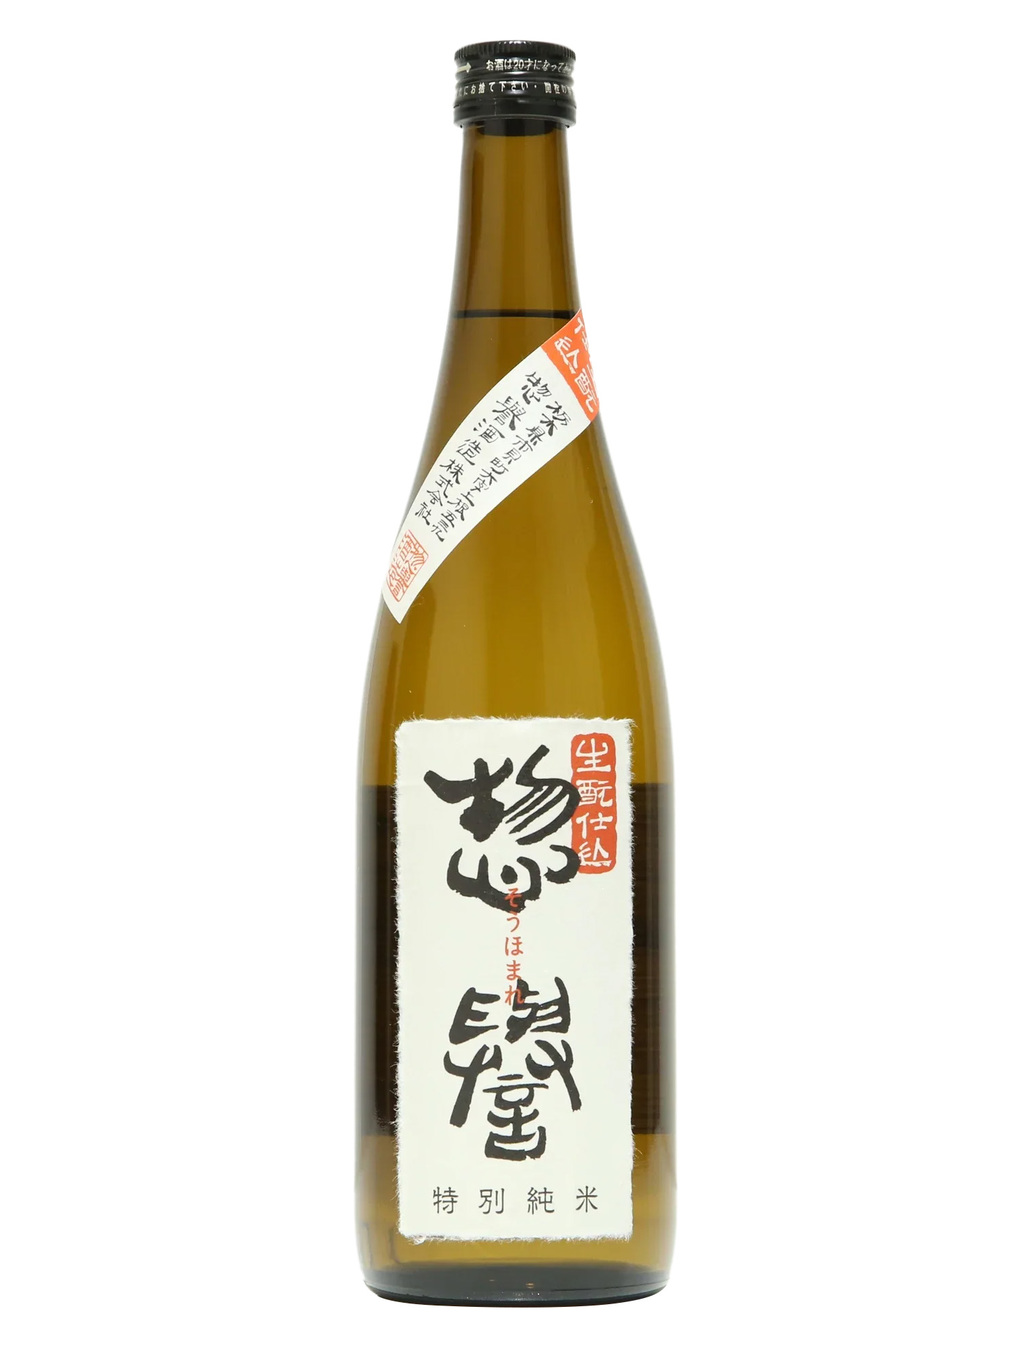 Kurisake-久利酒藏:: 產品介紹:: 惣譽生酛特別純米| 惣譽